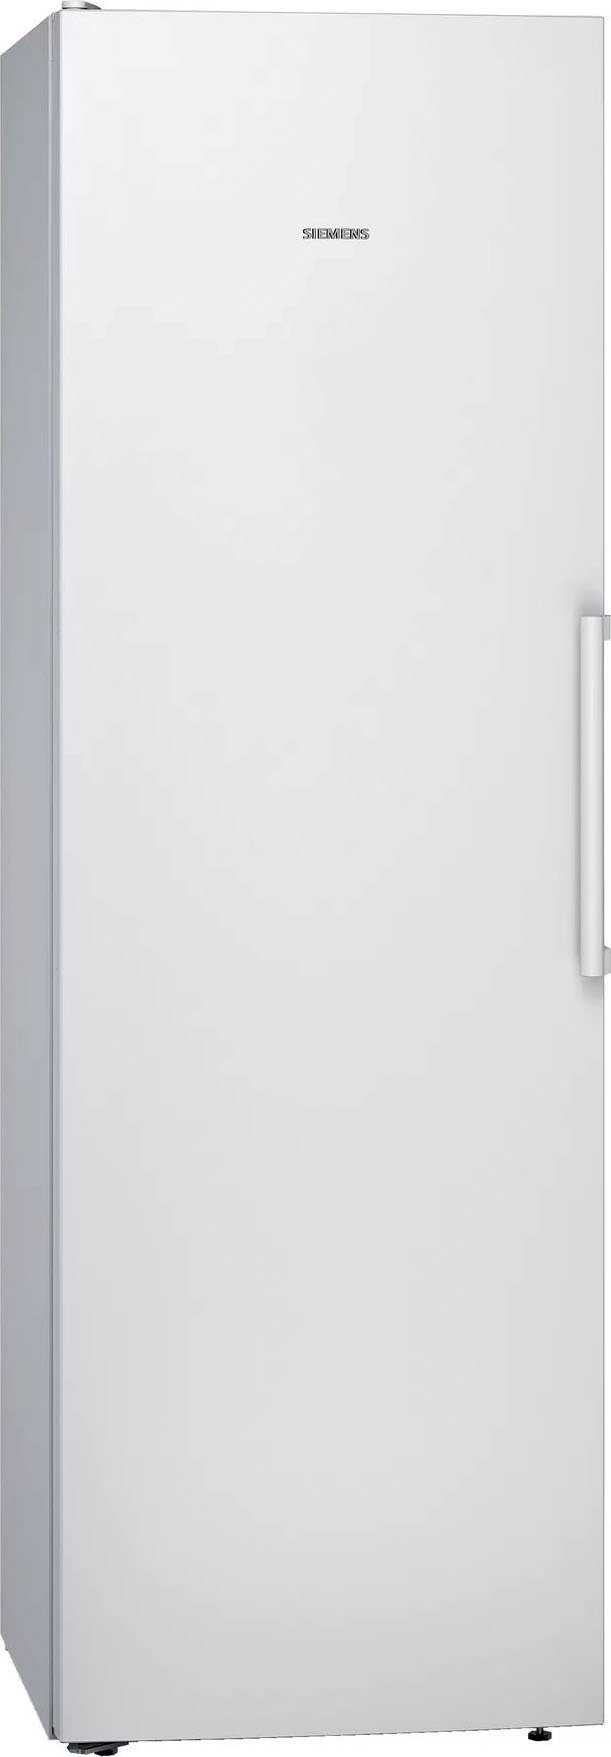 SIEMENS Kühlschrank iQ300 KS36VVWEP, 186 cm hoch, 60 cm breit weiß